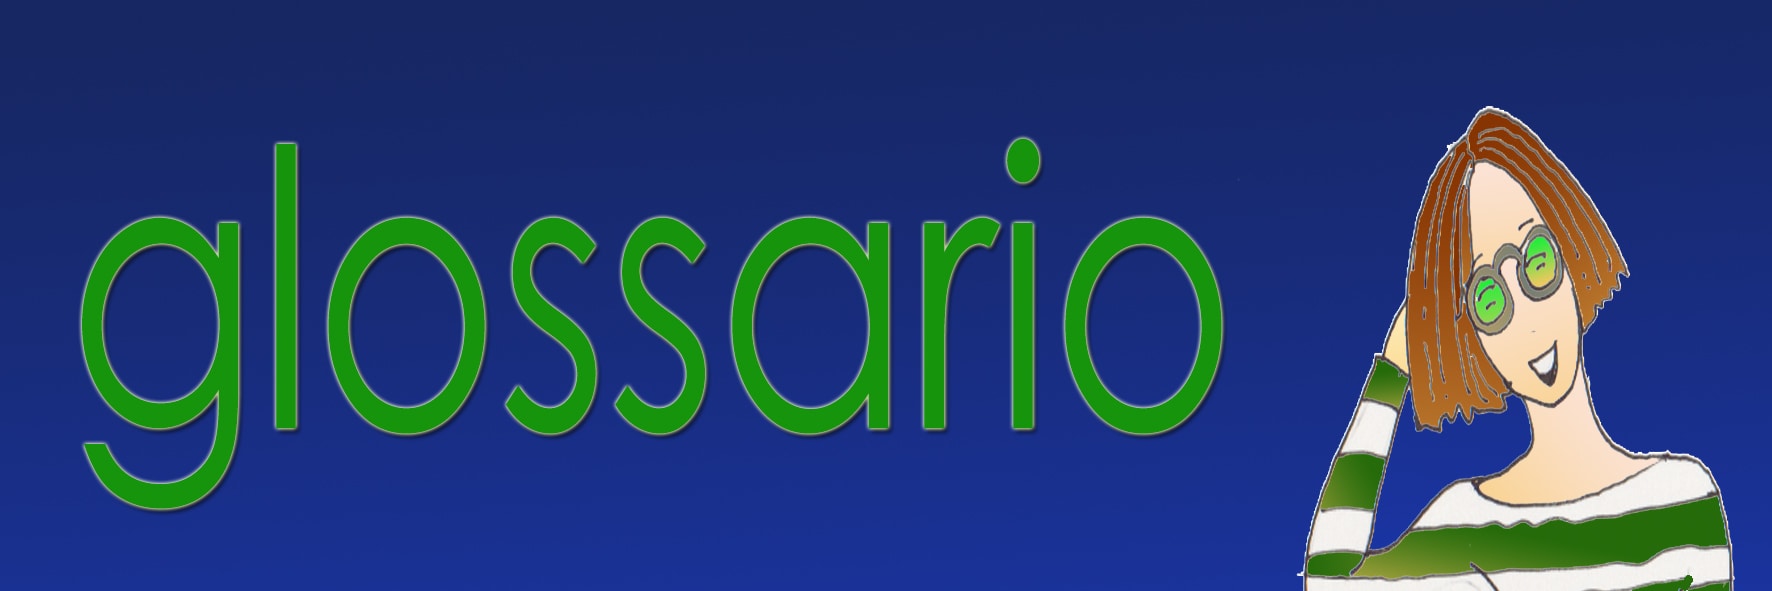 Le versione di Eva : Indice Glossario - La scritta in verde: 'glossario' - del medesimo colore la maglietta a strisce verdi e bianche di una ragazza con gli occhiali, in mezzo busto, a destra della scritta